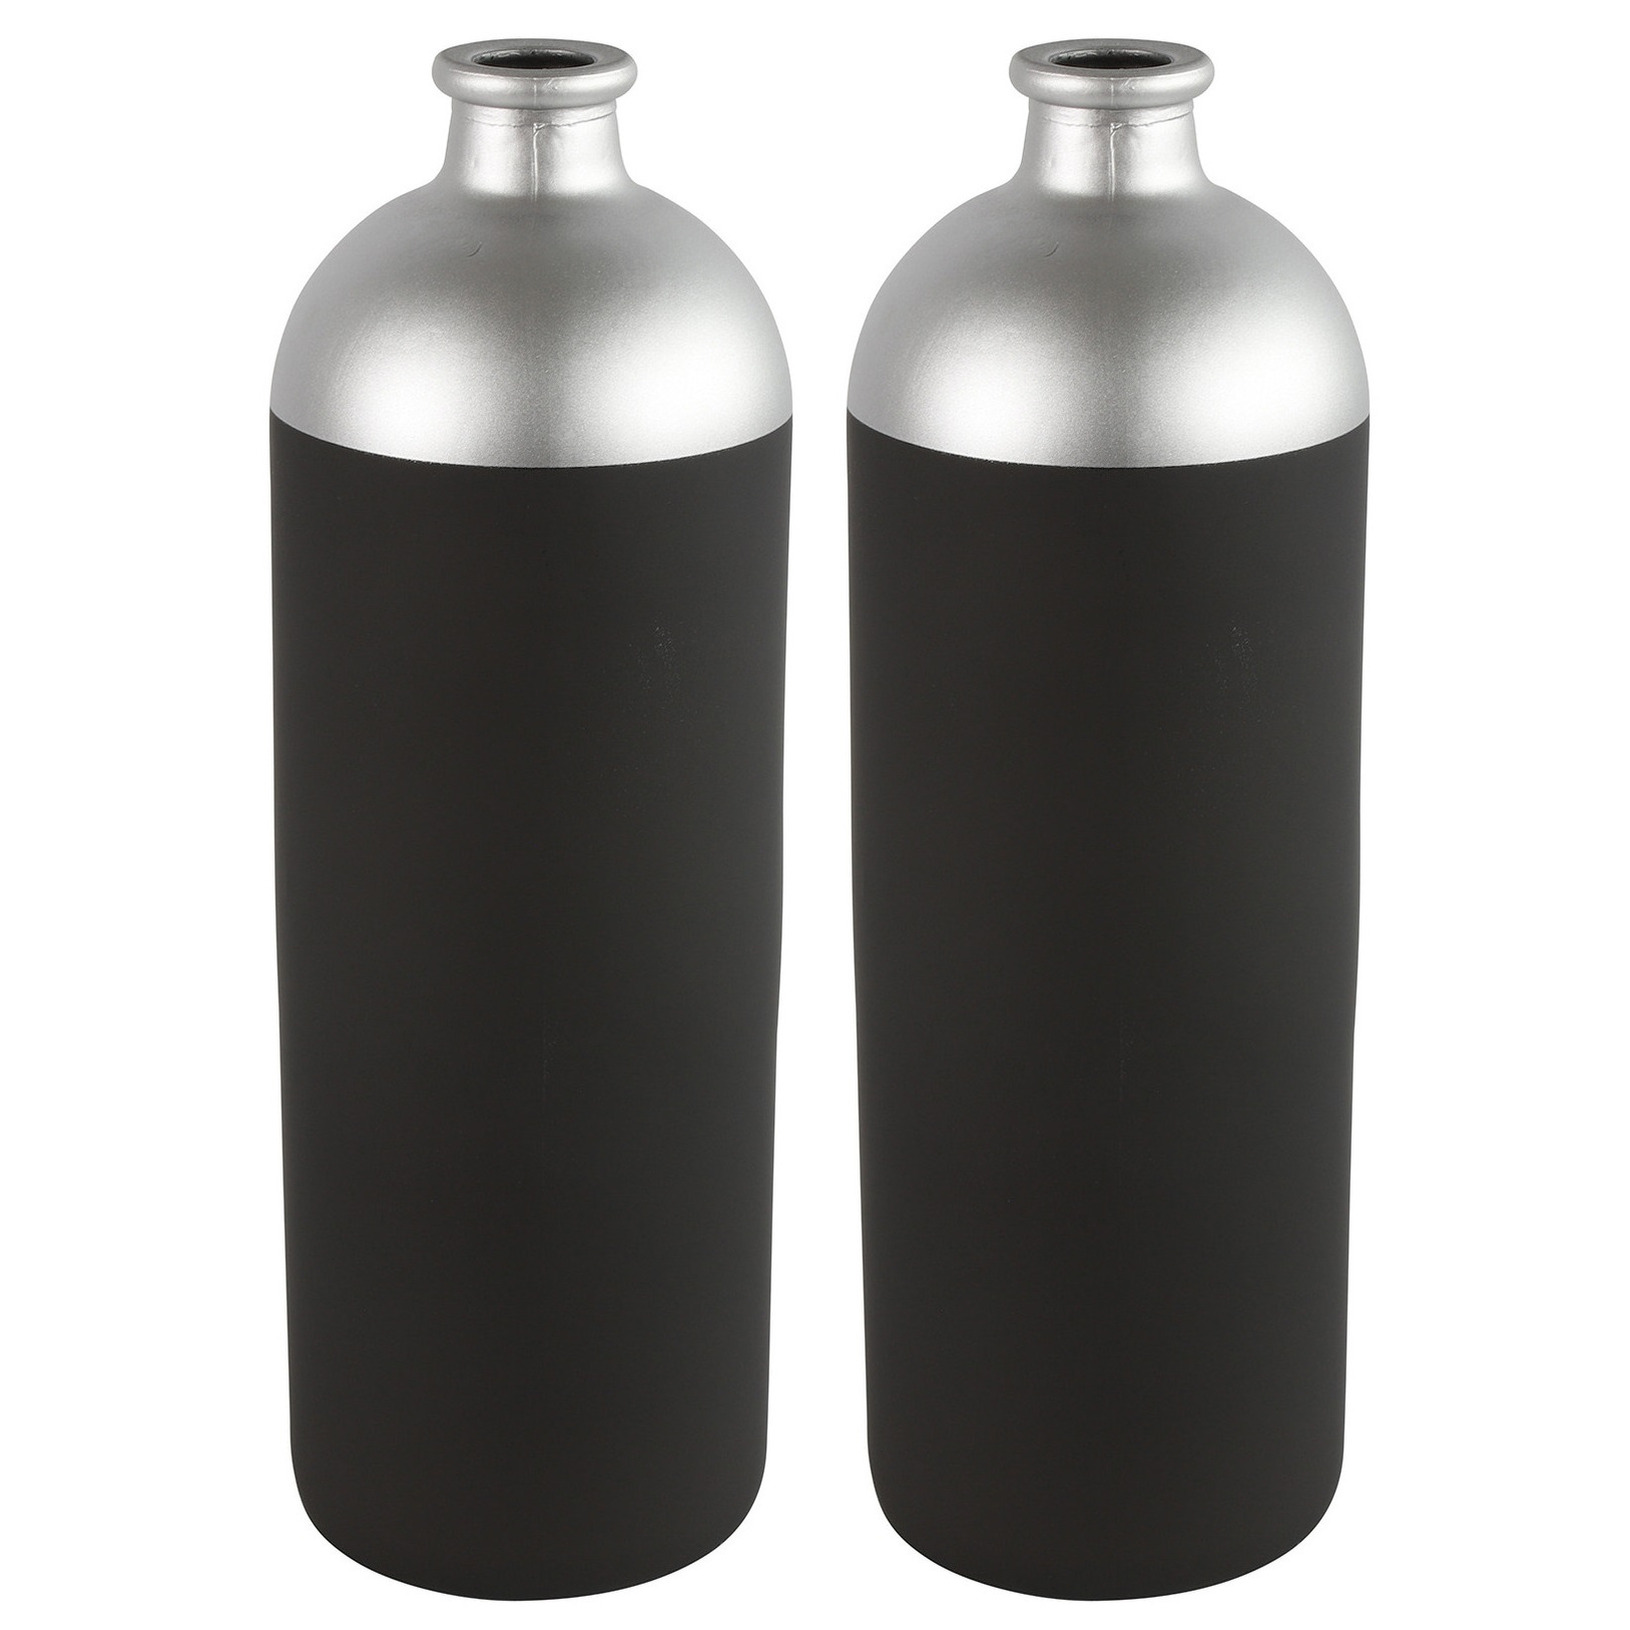 Countryfield Bloemen-deco vaas 2x zwart-zilver glas luxe fles vorm D13 x H41 cm